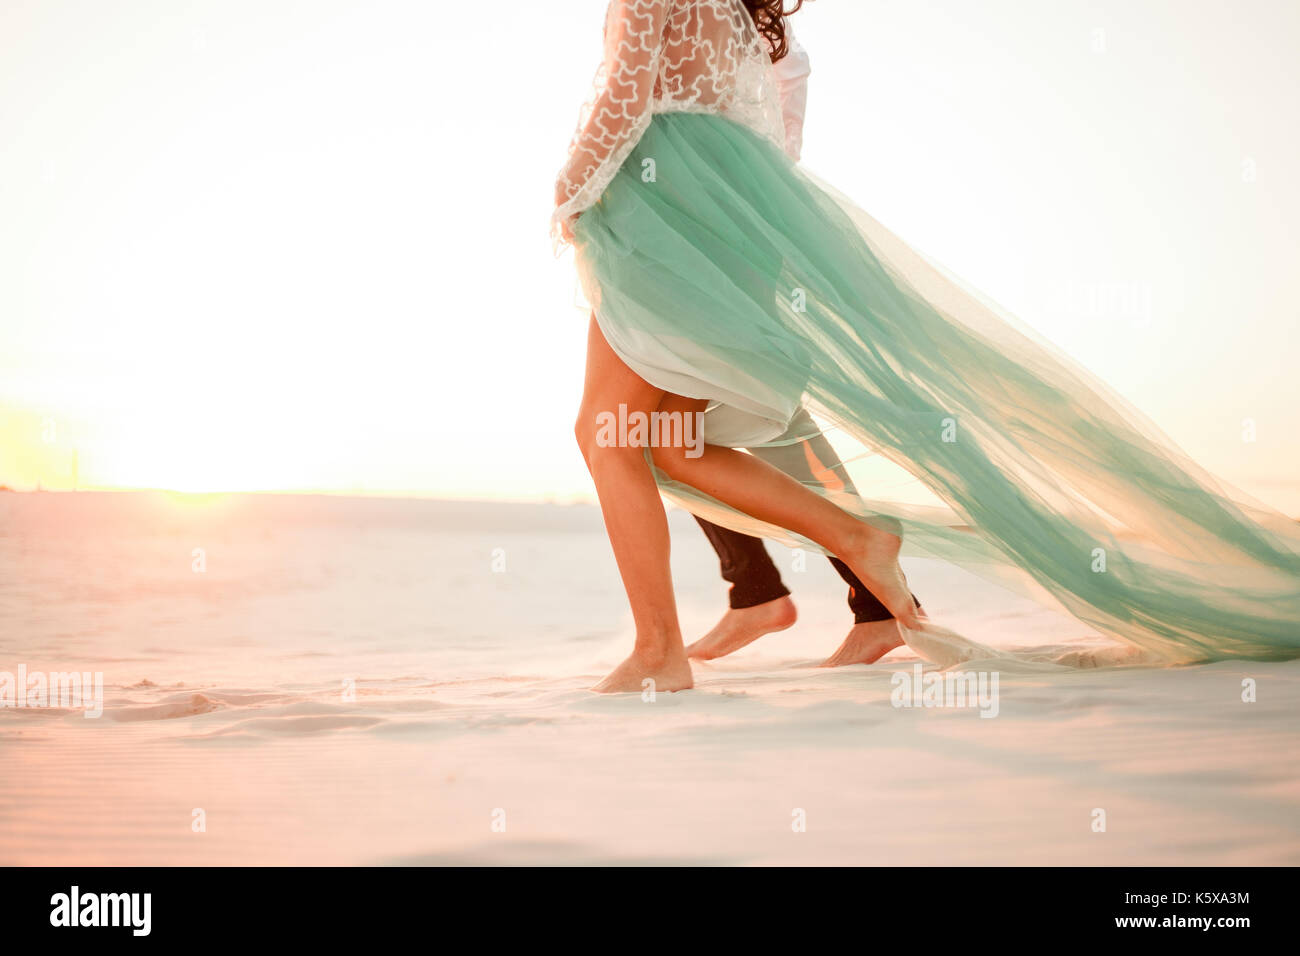 Les jambes de la jeune mariée et se toilettent marche pieds nus sur du sable dans le désert au coucher du soleil. close up. Banque D'Images